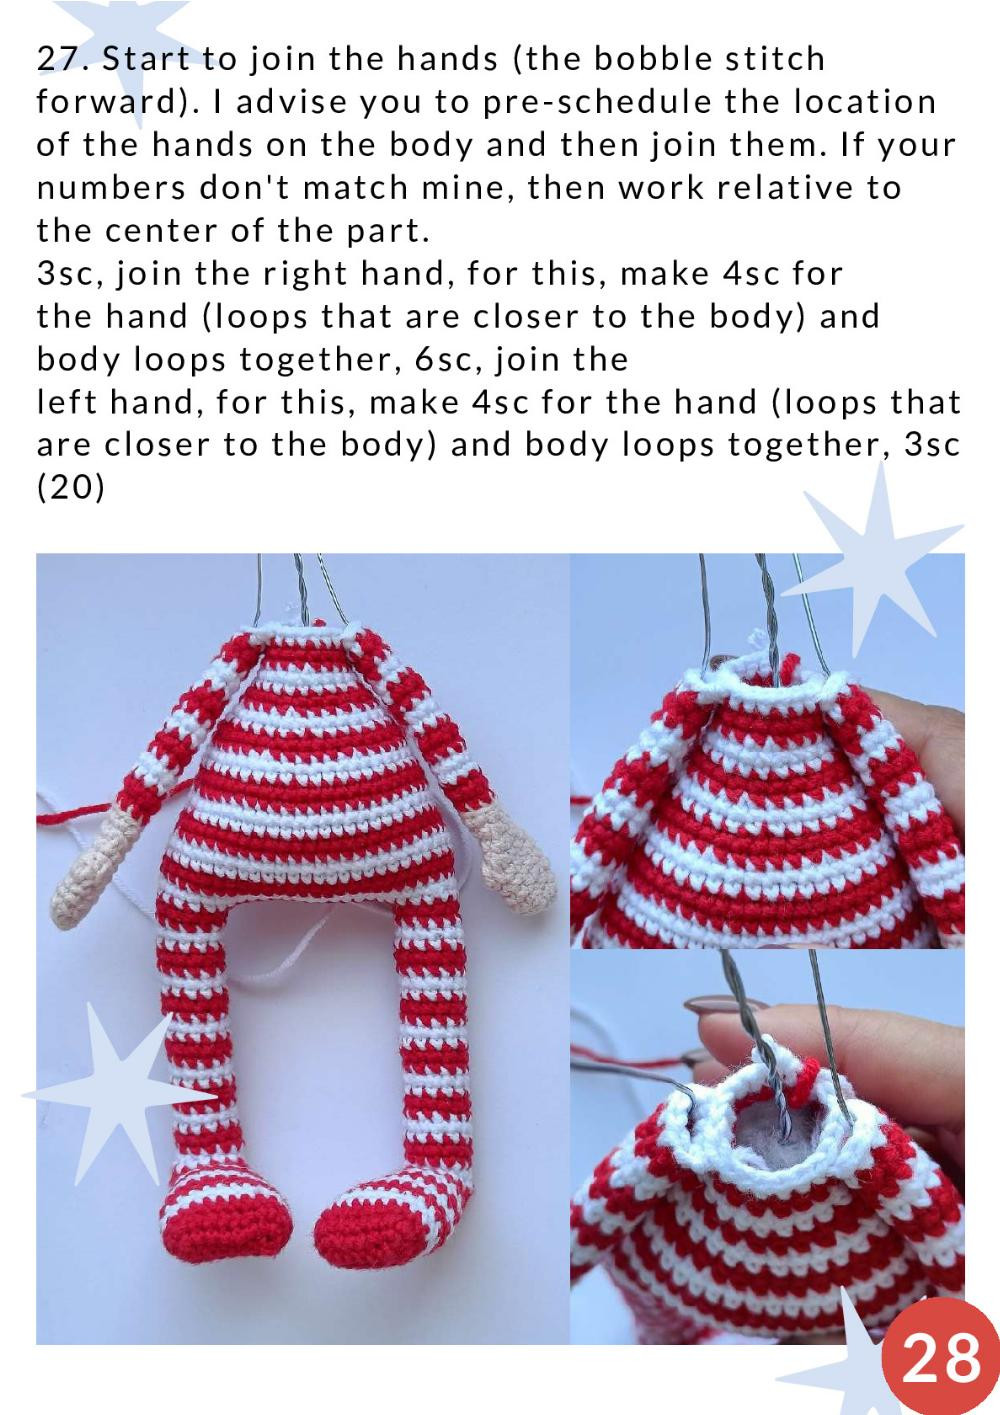 crochet pattern elf boy